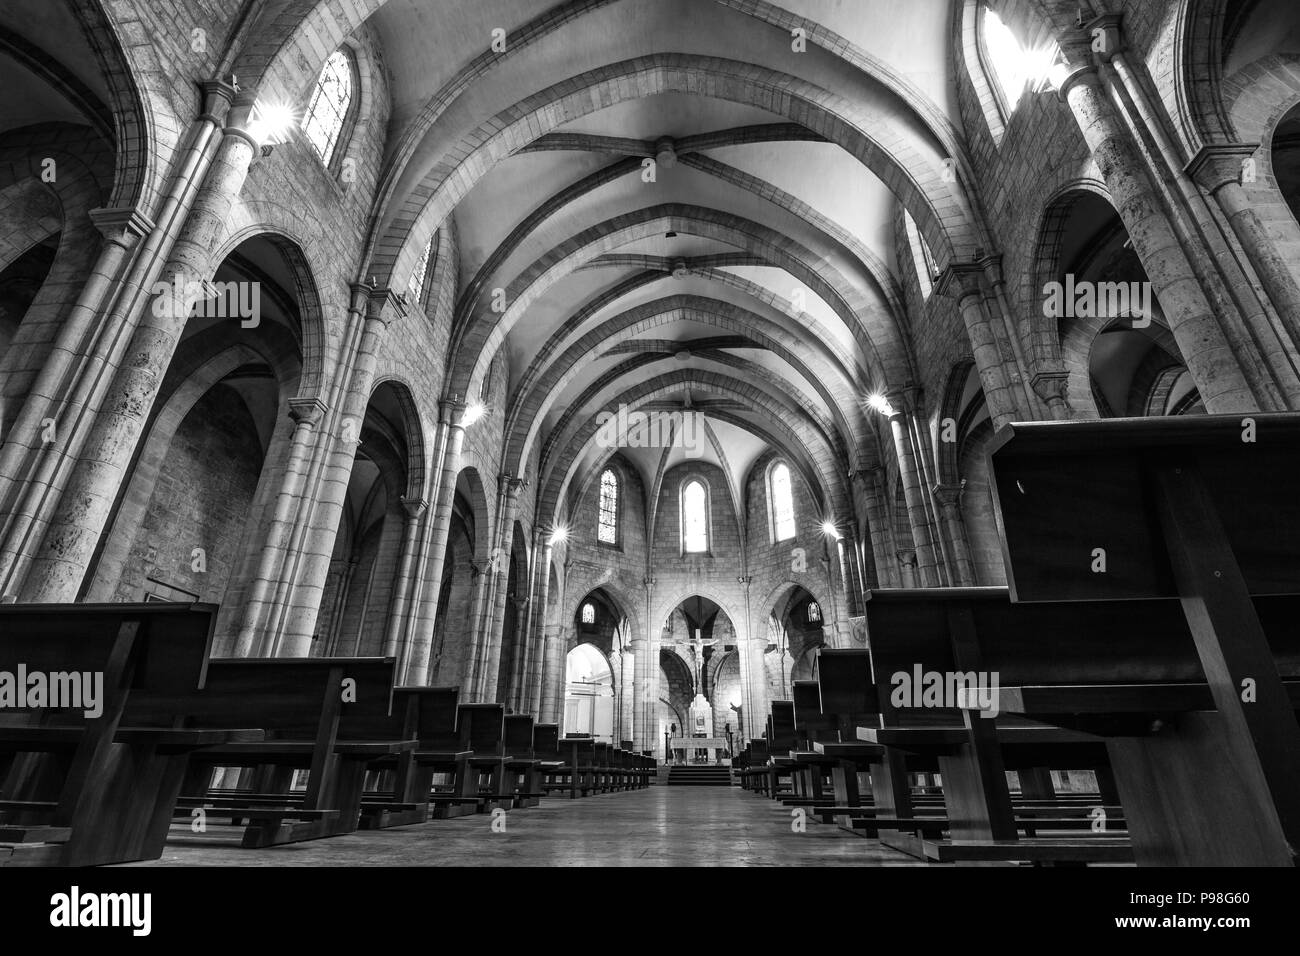 VALENCIA, Spanien - 18. FEBRUAR 2013: Das Innere einer herrlichen Kirche ist wunderschön Deckel durch Paar Lampen und natürliches Licht aus den Fenstern, b Stockfoto